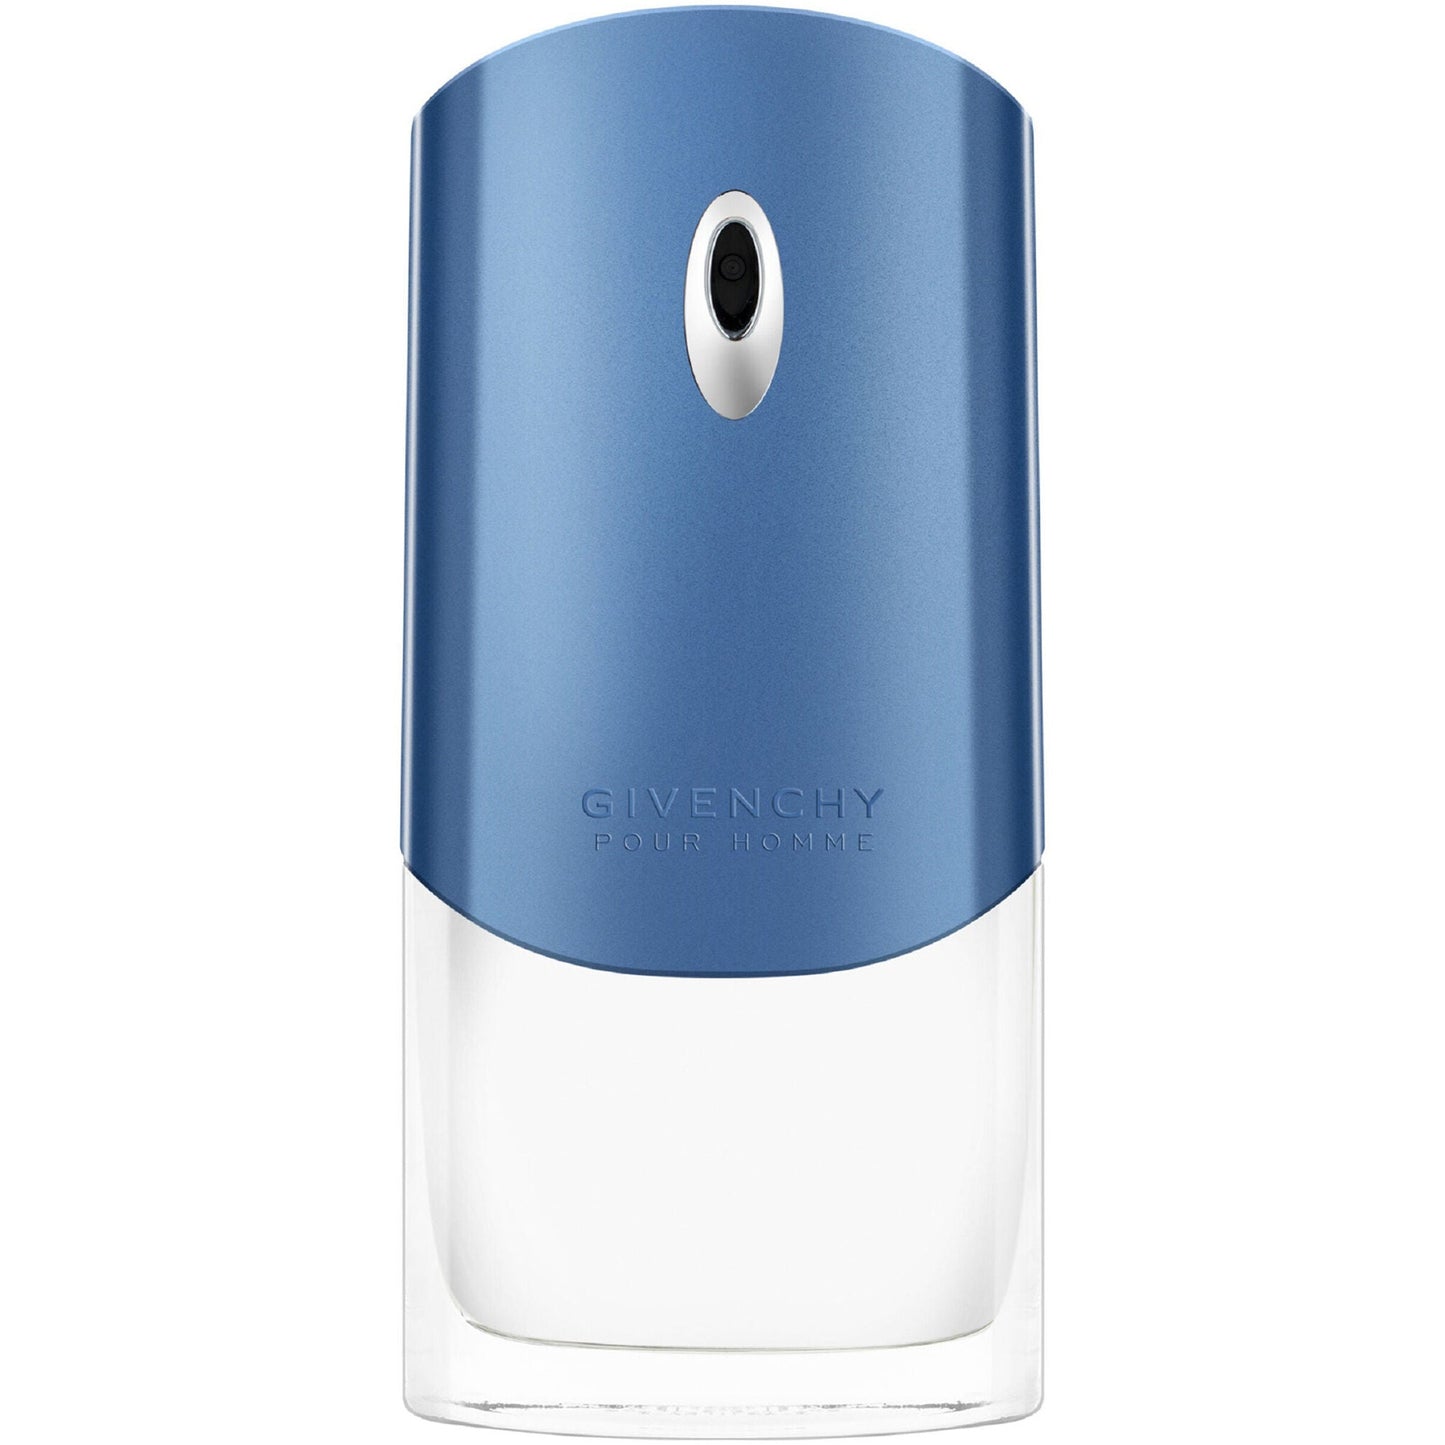 Givenchy Blue Label Perfume Para Hombre 100ml Eau de Toilette